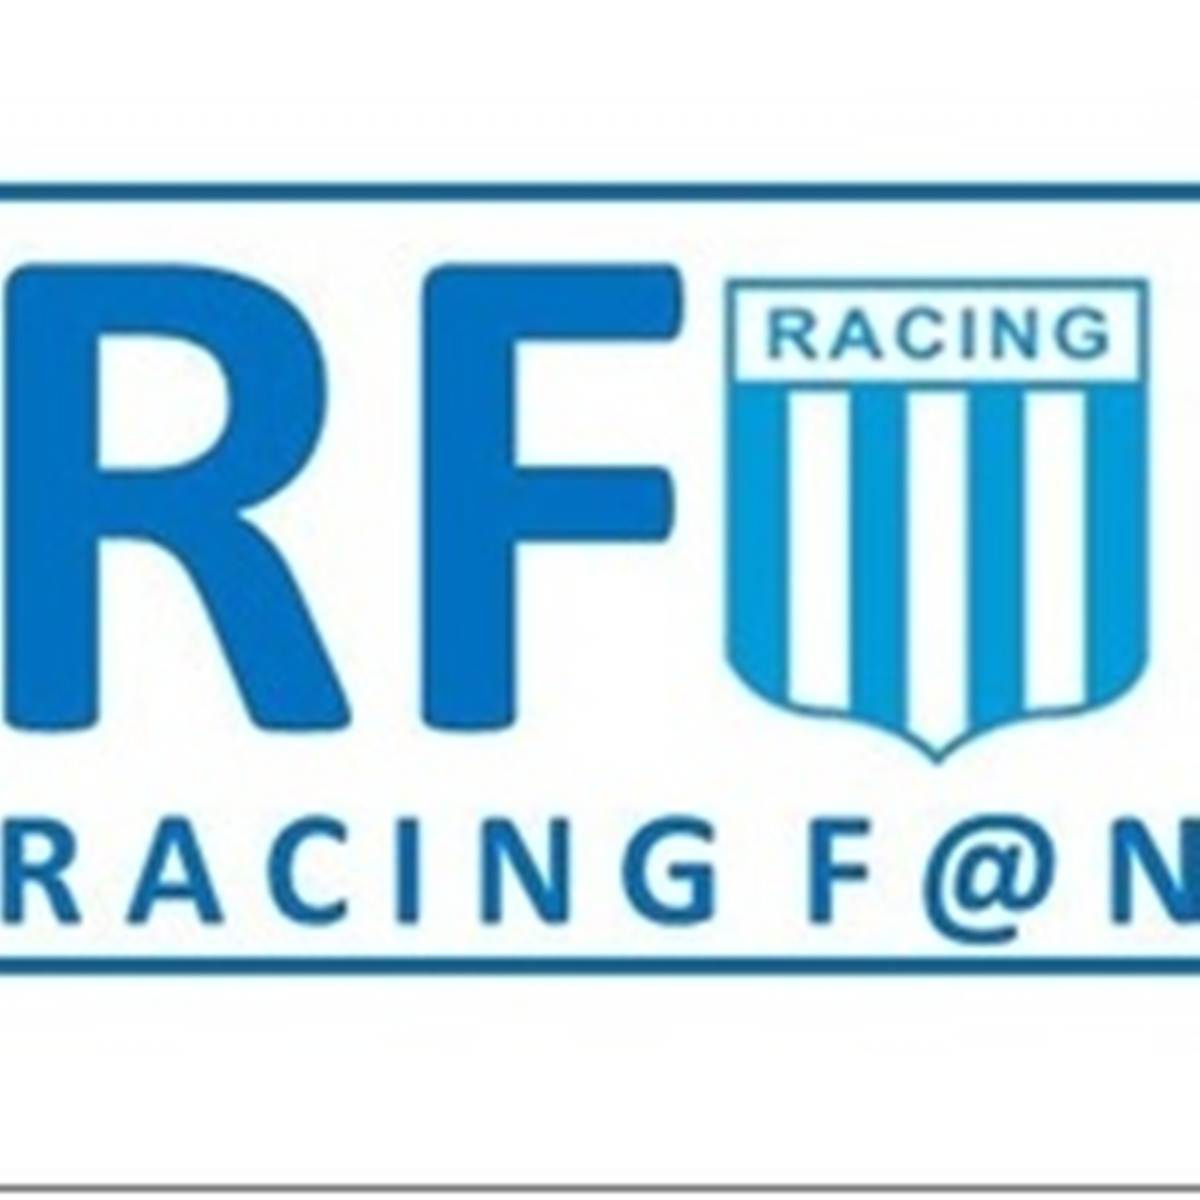 #Podcast Racing Fan 04.08: El refuerzo Augusto Solari y @delriofede Depto. Comunicación y Prensa